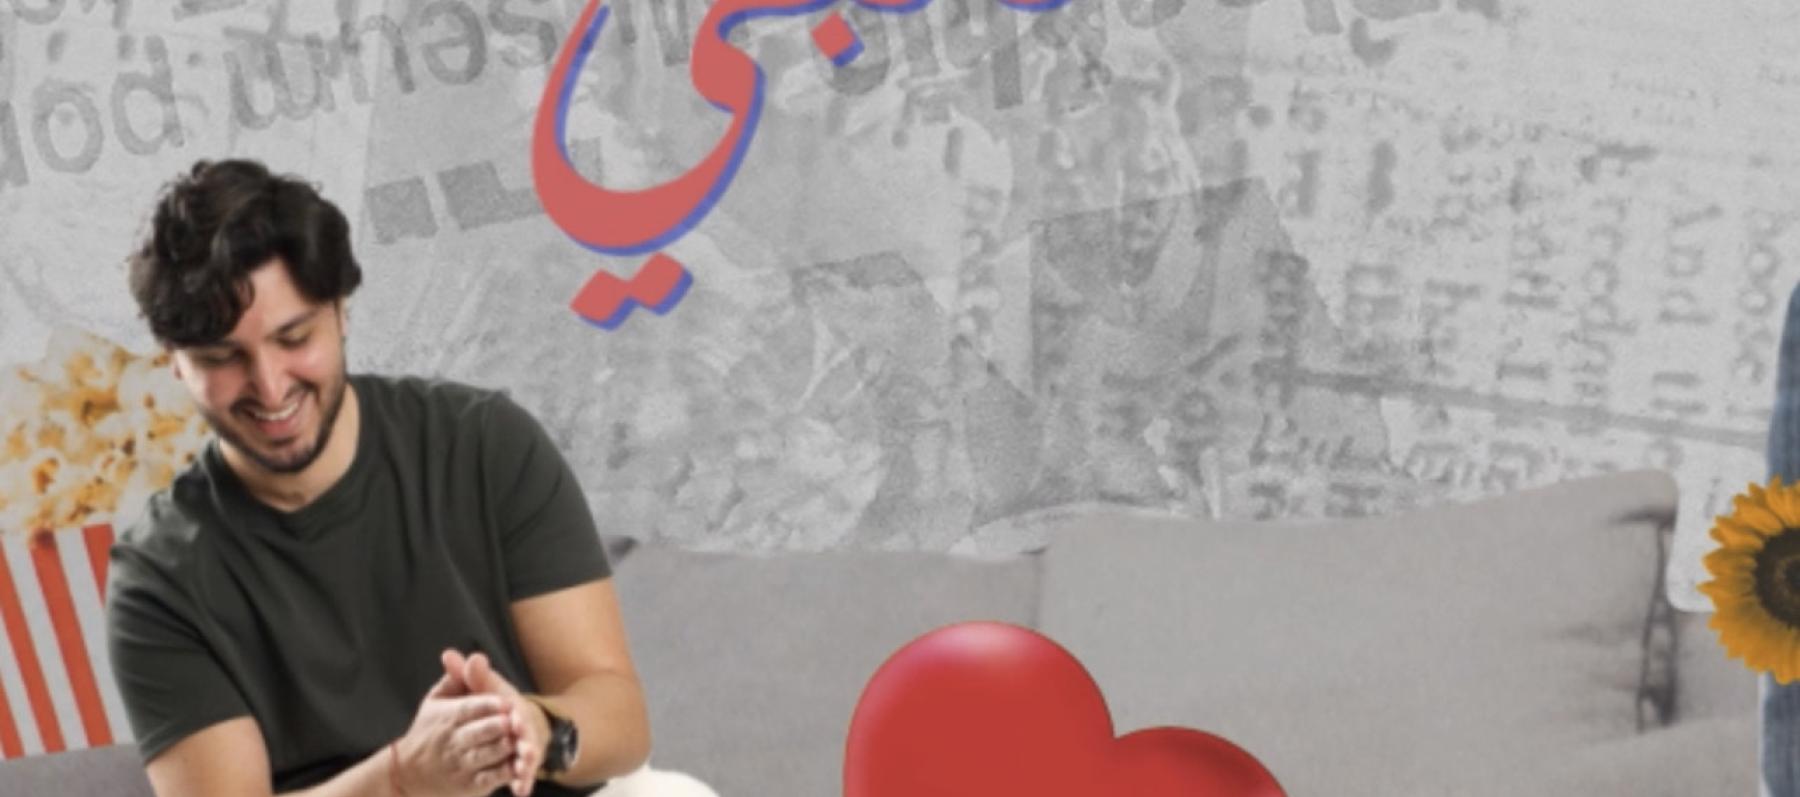 محمد شاكر يغني "عن قلبي" بالمصرية